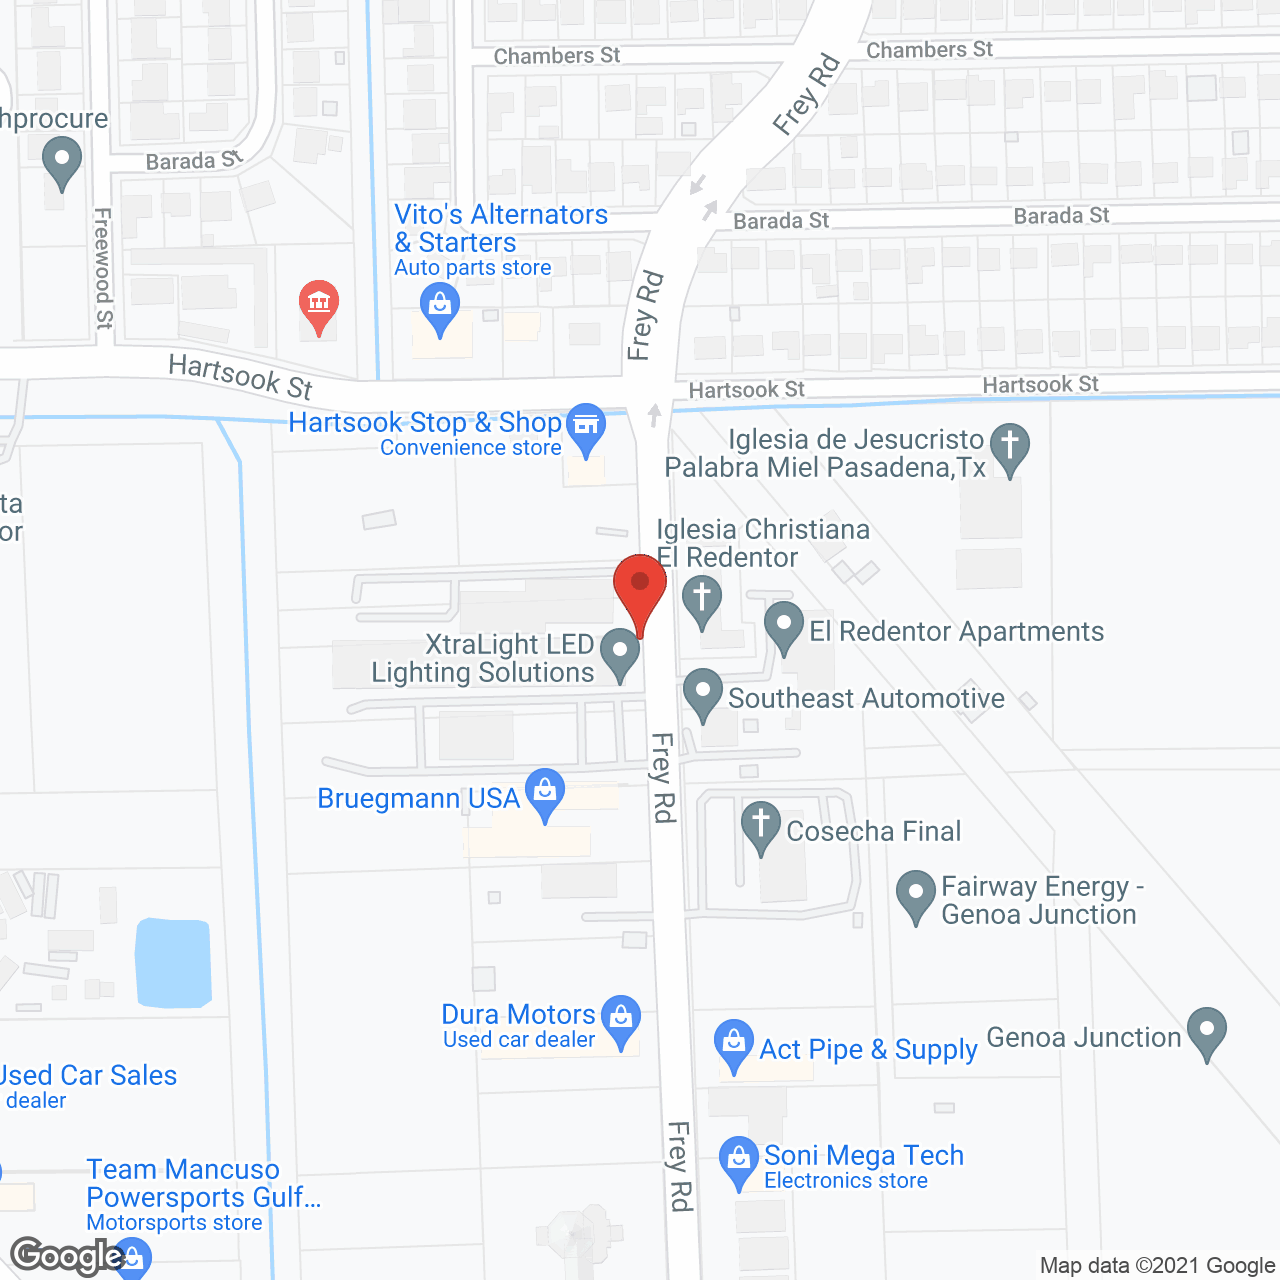 El Redentor Apartments in google map